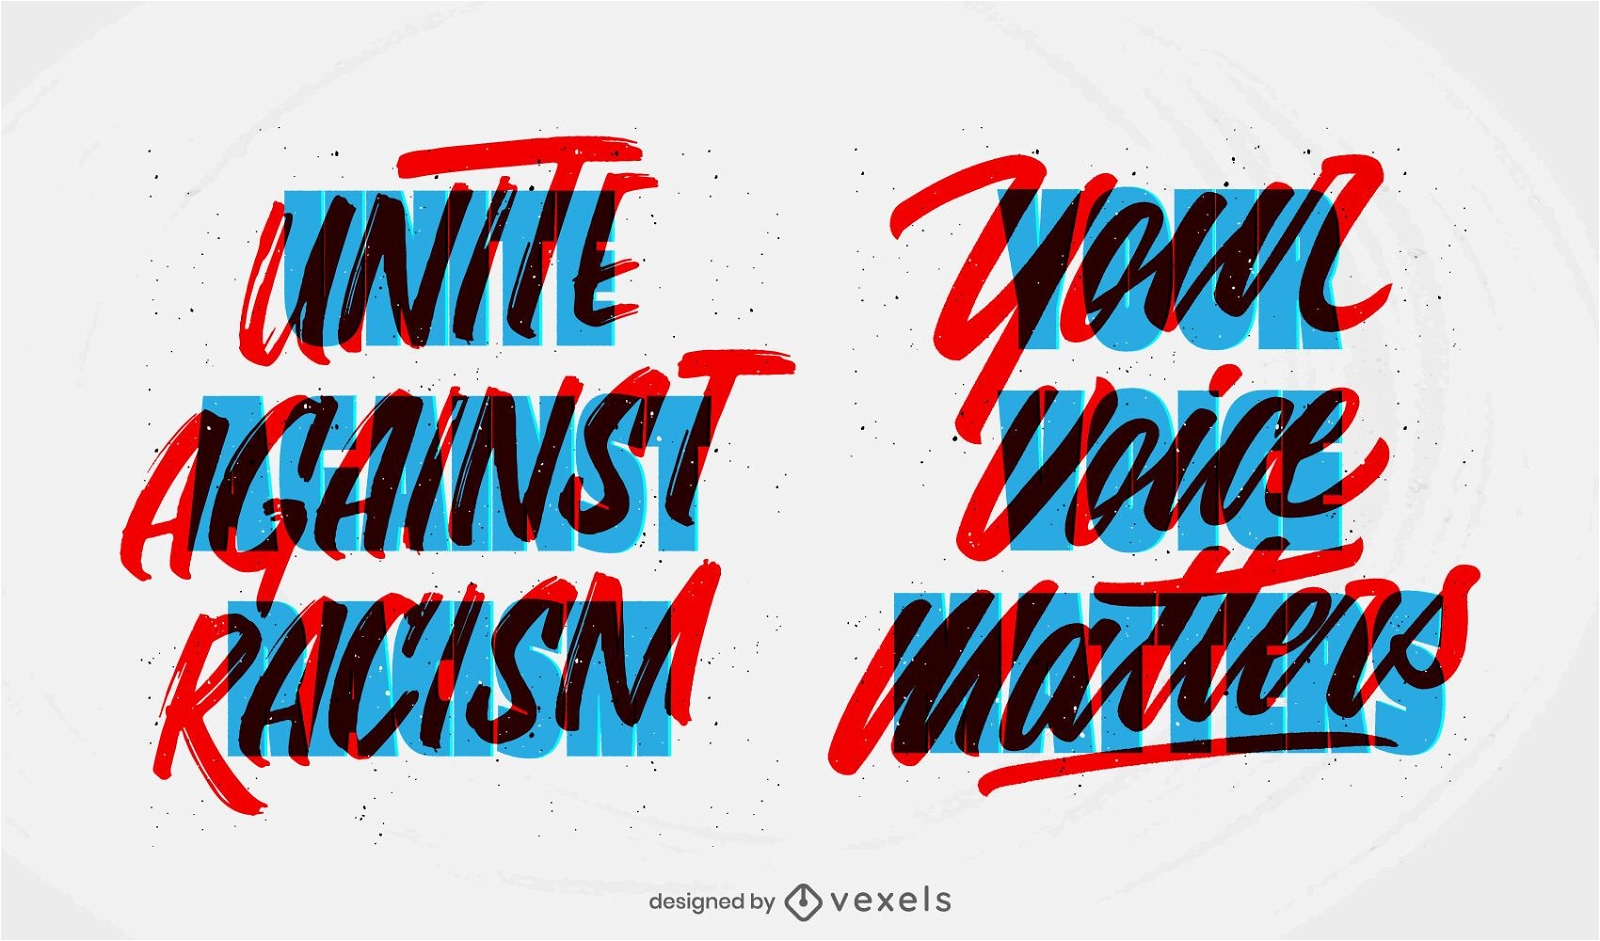 vereinigt euch gegen Rassismus Schriftzug gesetzt